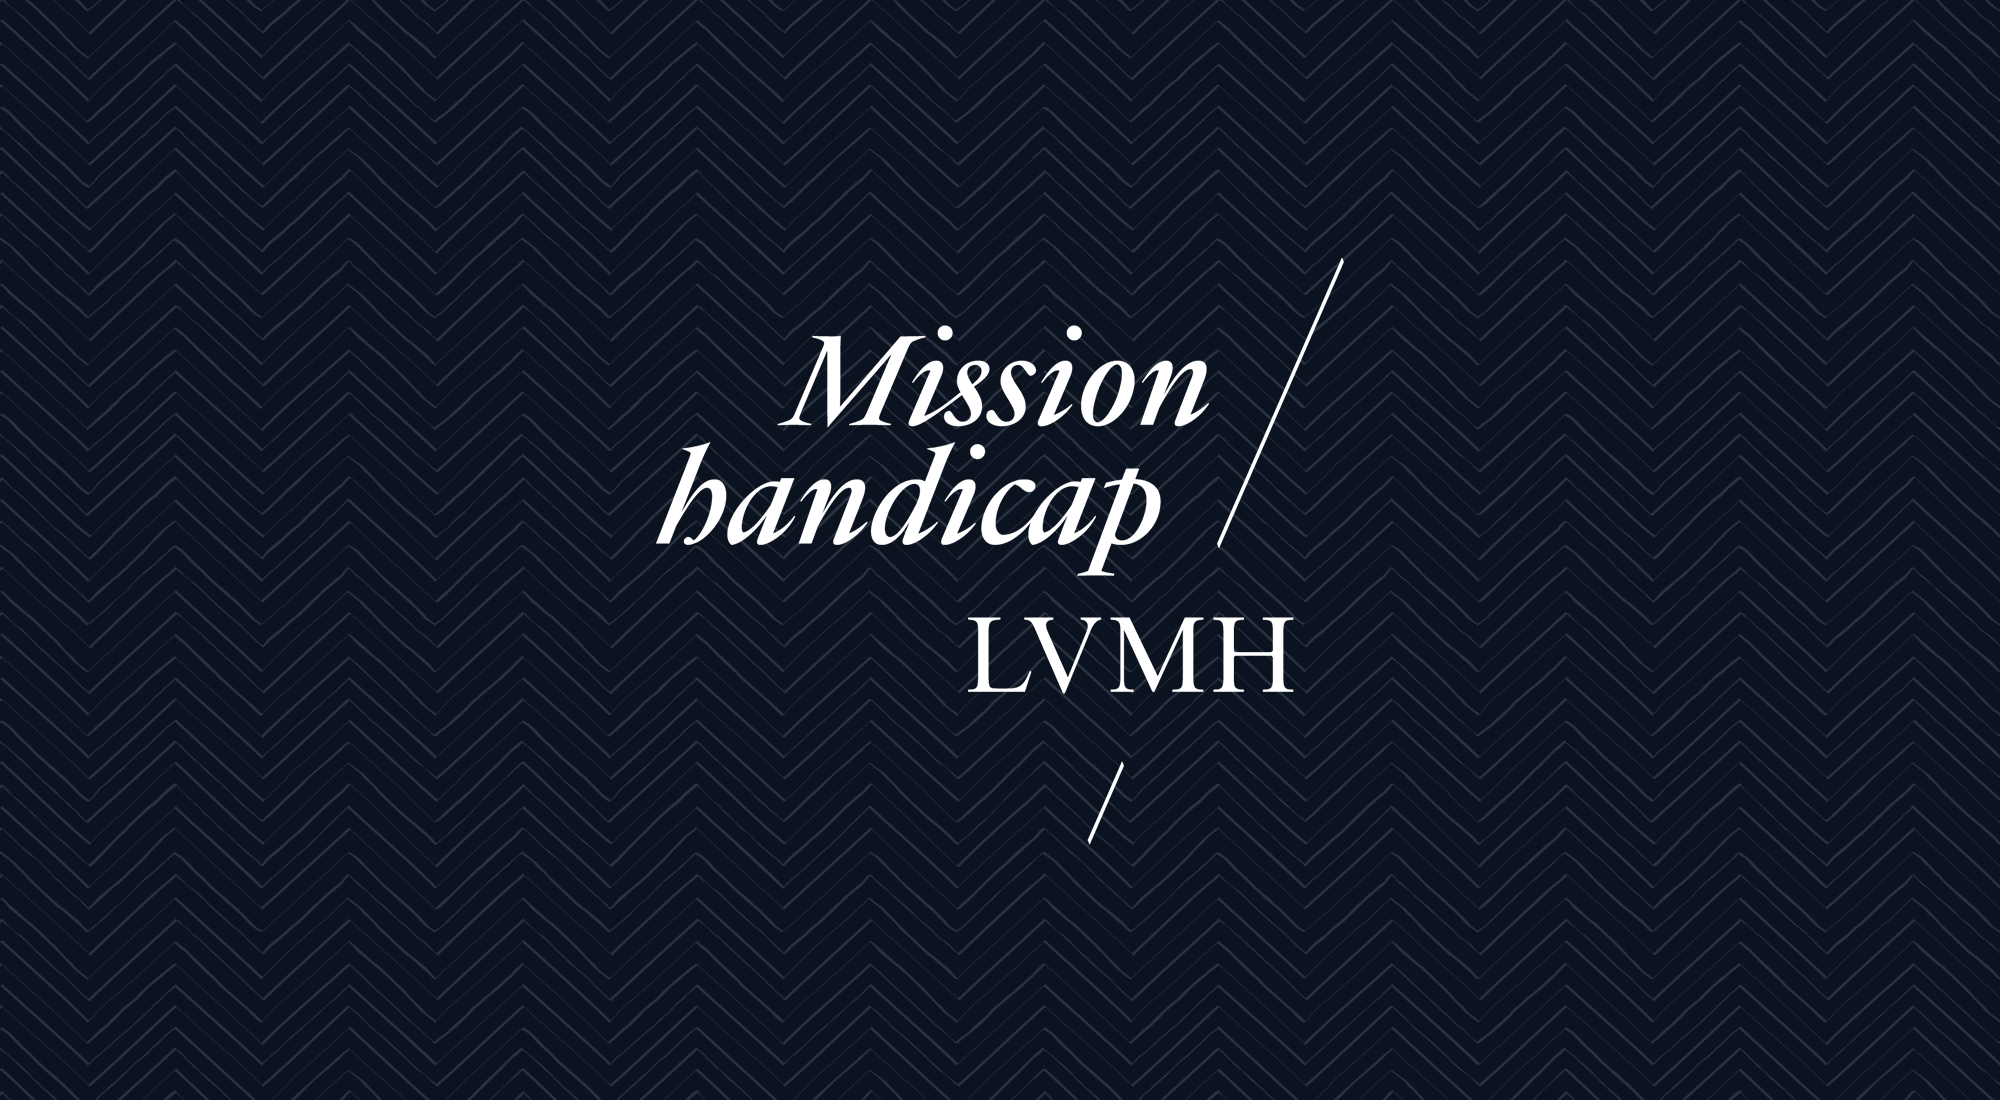 Retour sur l'année 2019 chez LVMH : une année marquée par le renforcement  des engagements du Groupe en faveur de la société et de l'environnement -  LVMH